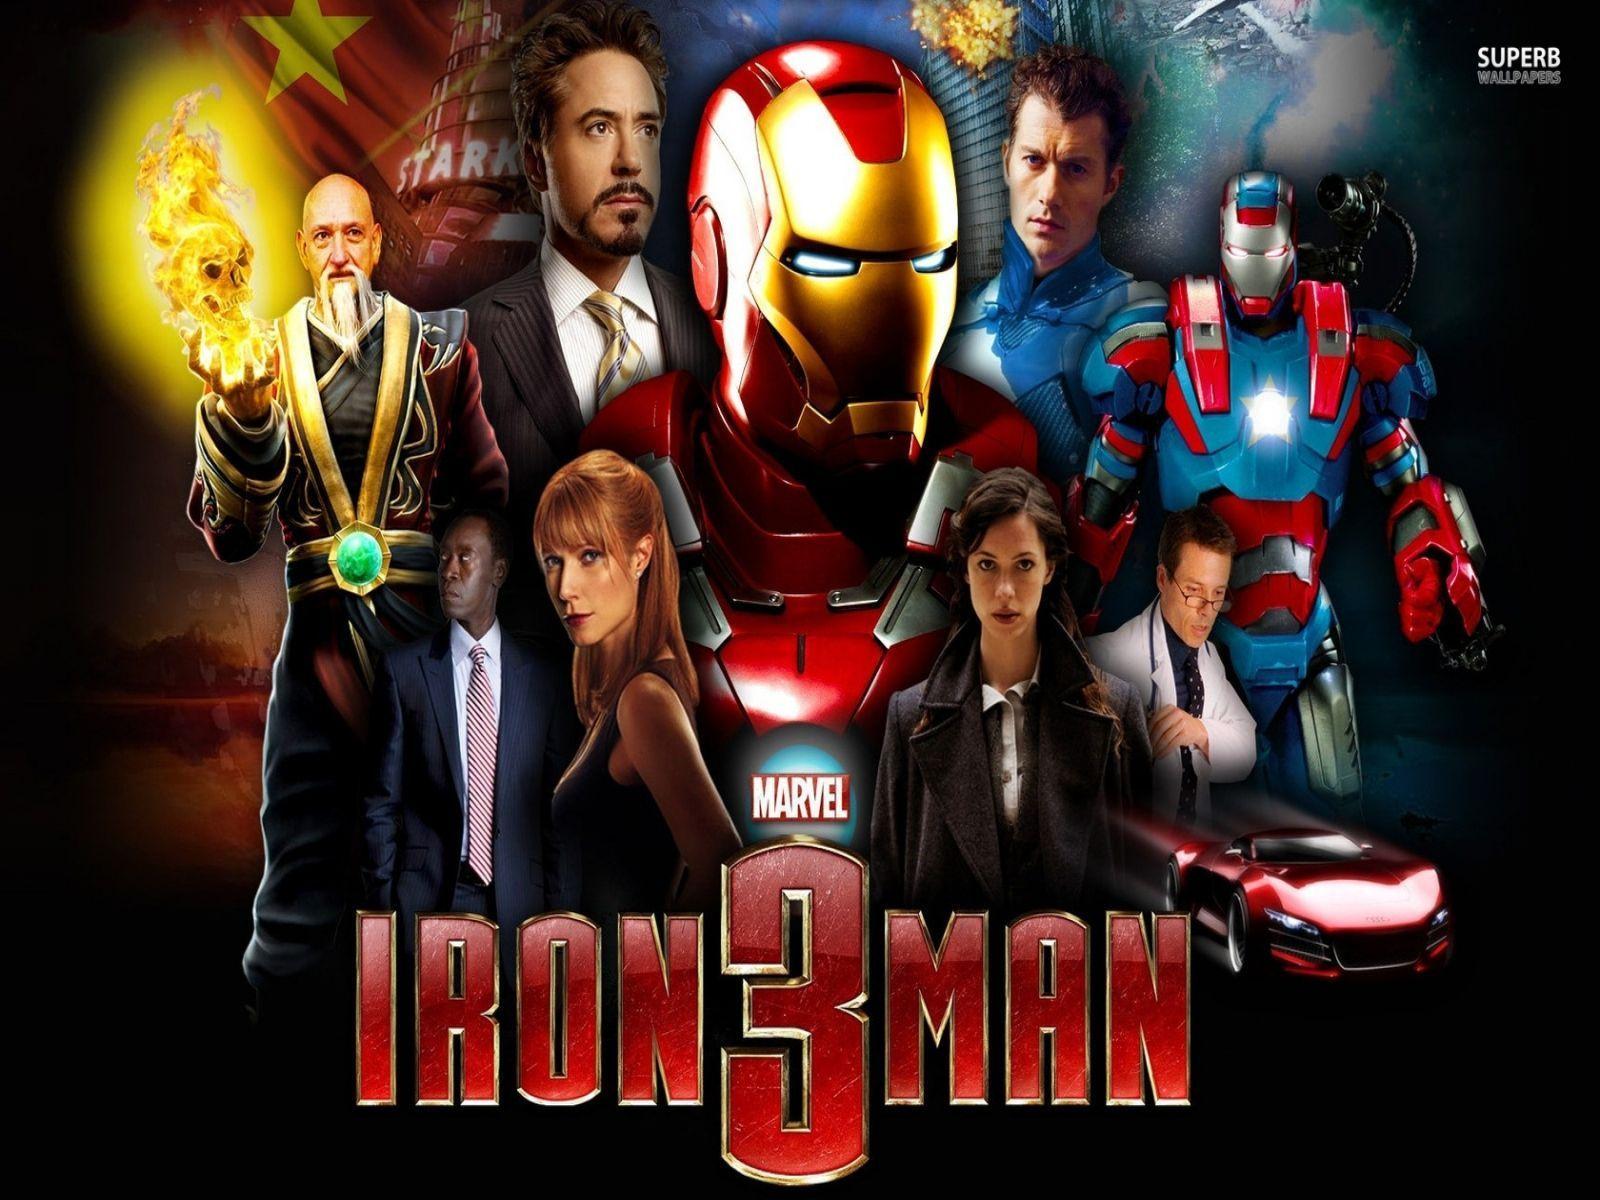 Iron Man 3 HD Wallpaper 2013. Best Wallpaper Fan. Download Free